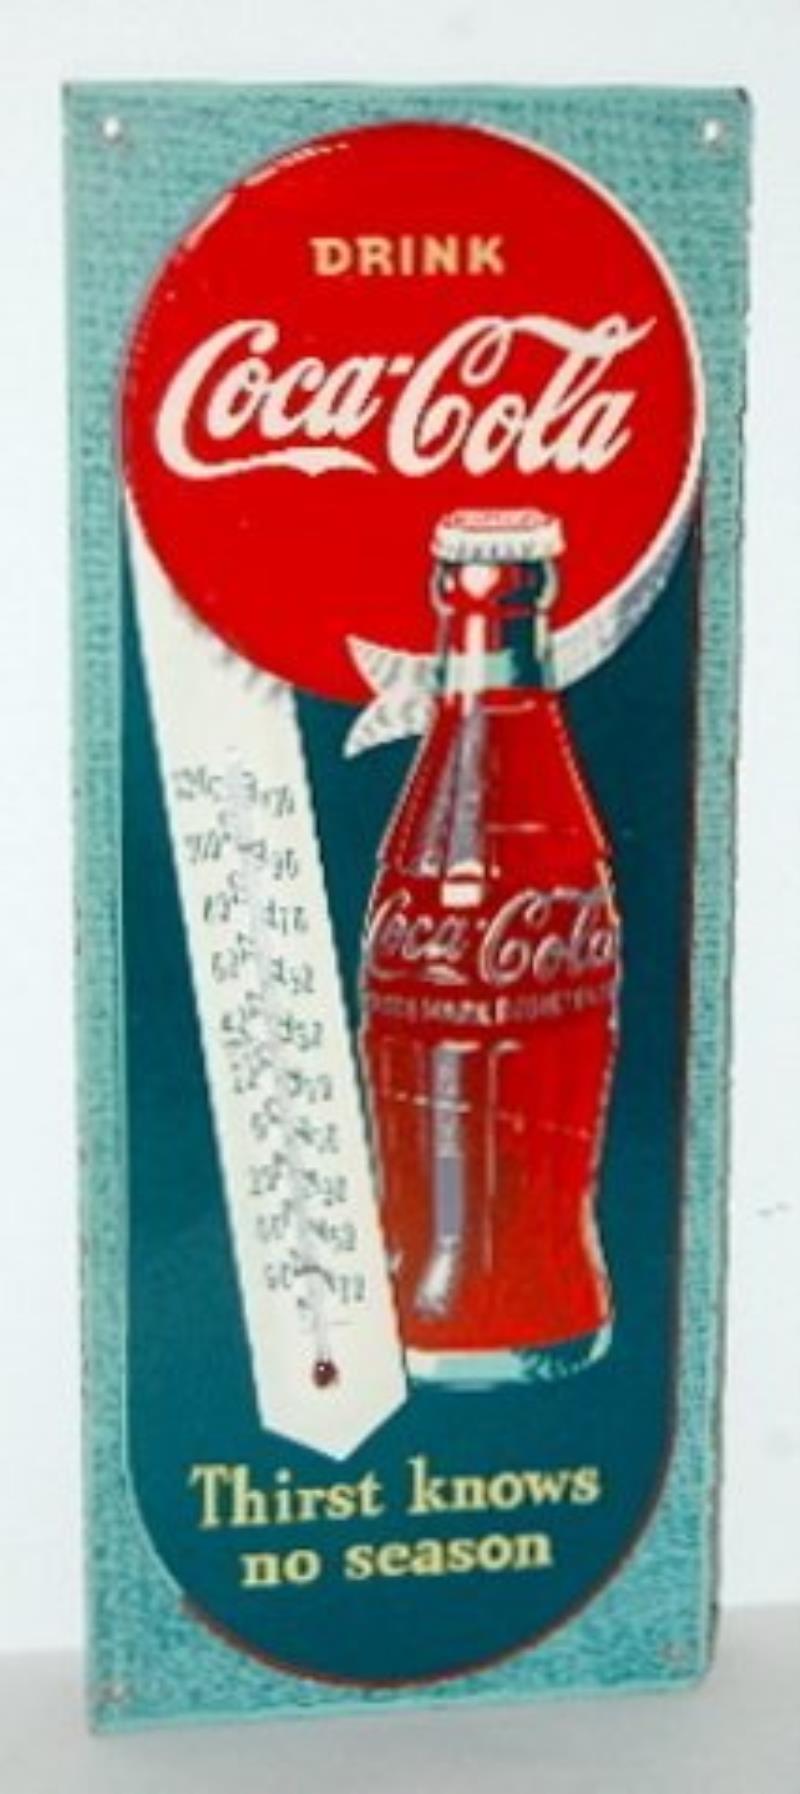 1944 Masonite "Drink Coca Cola" Thermometer